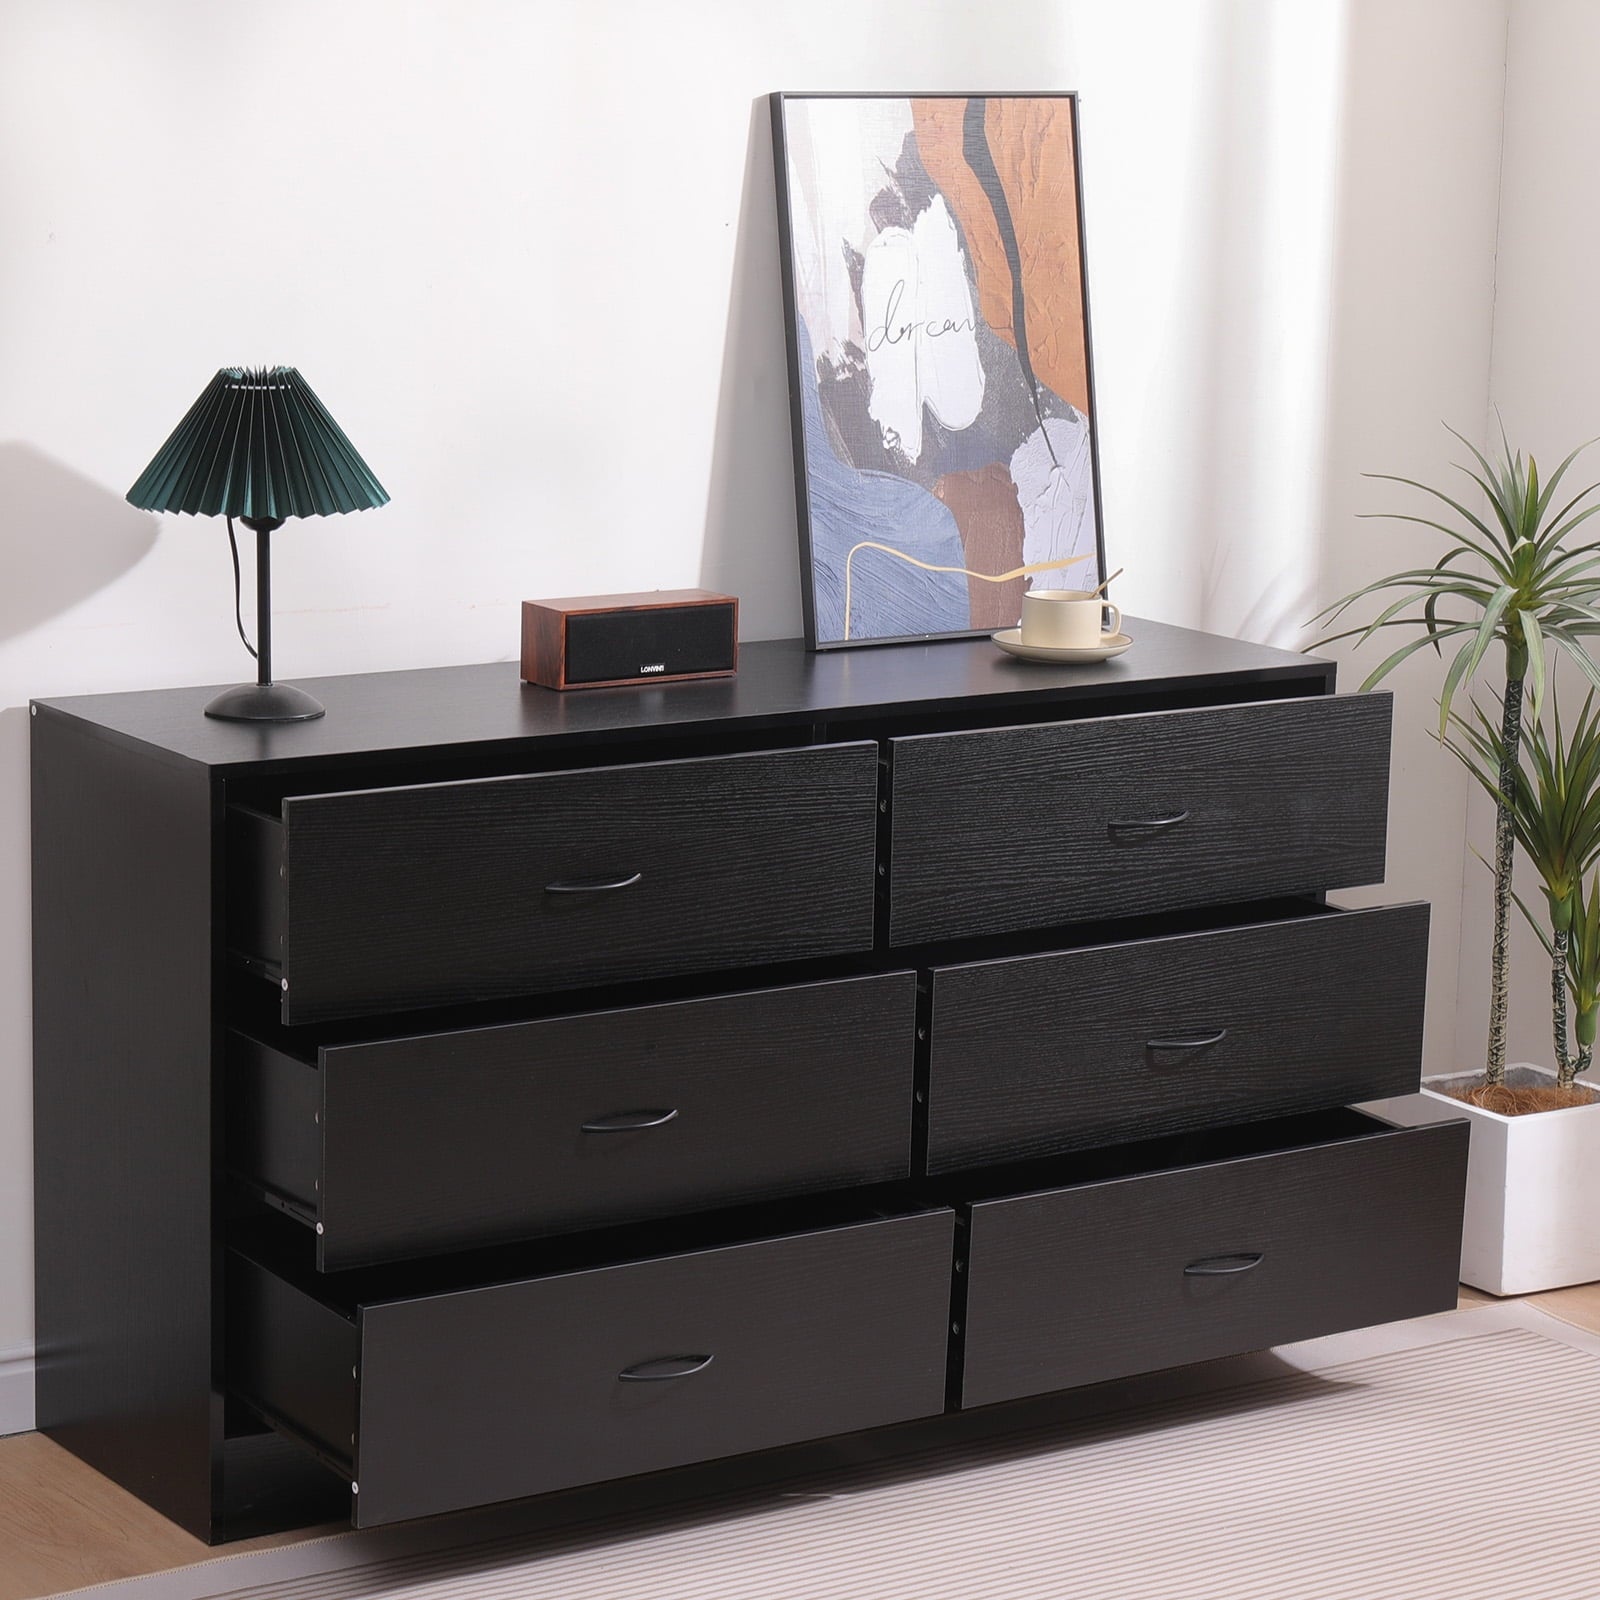 SUGIFT 6 Drawer Double Dresser Black Wood Dresser for Bedroom